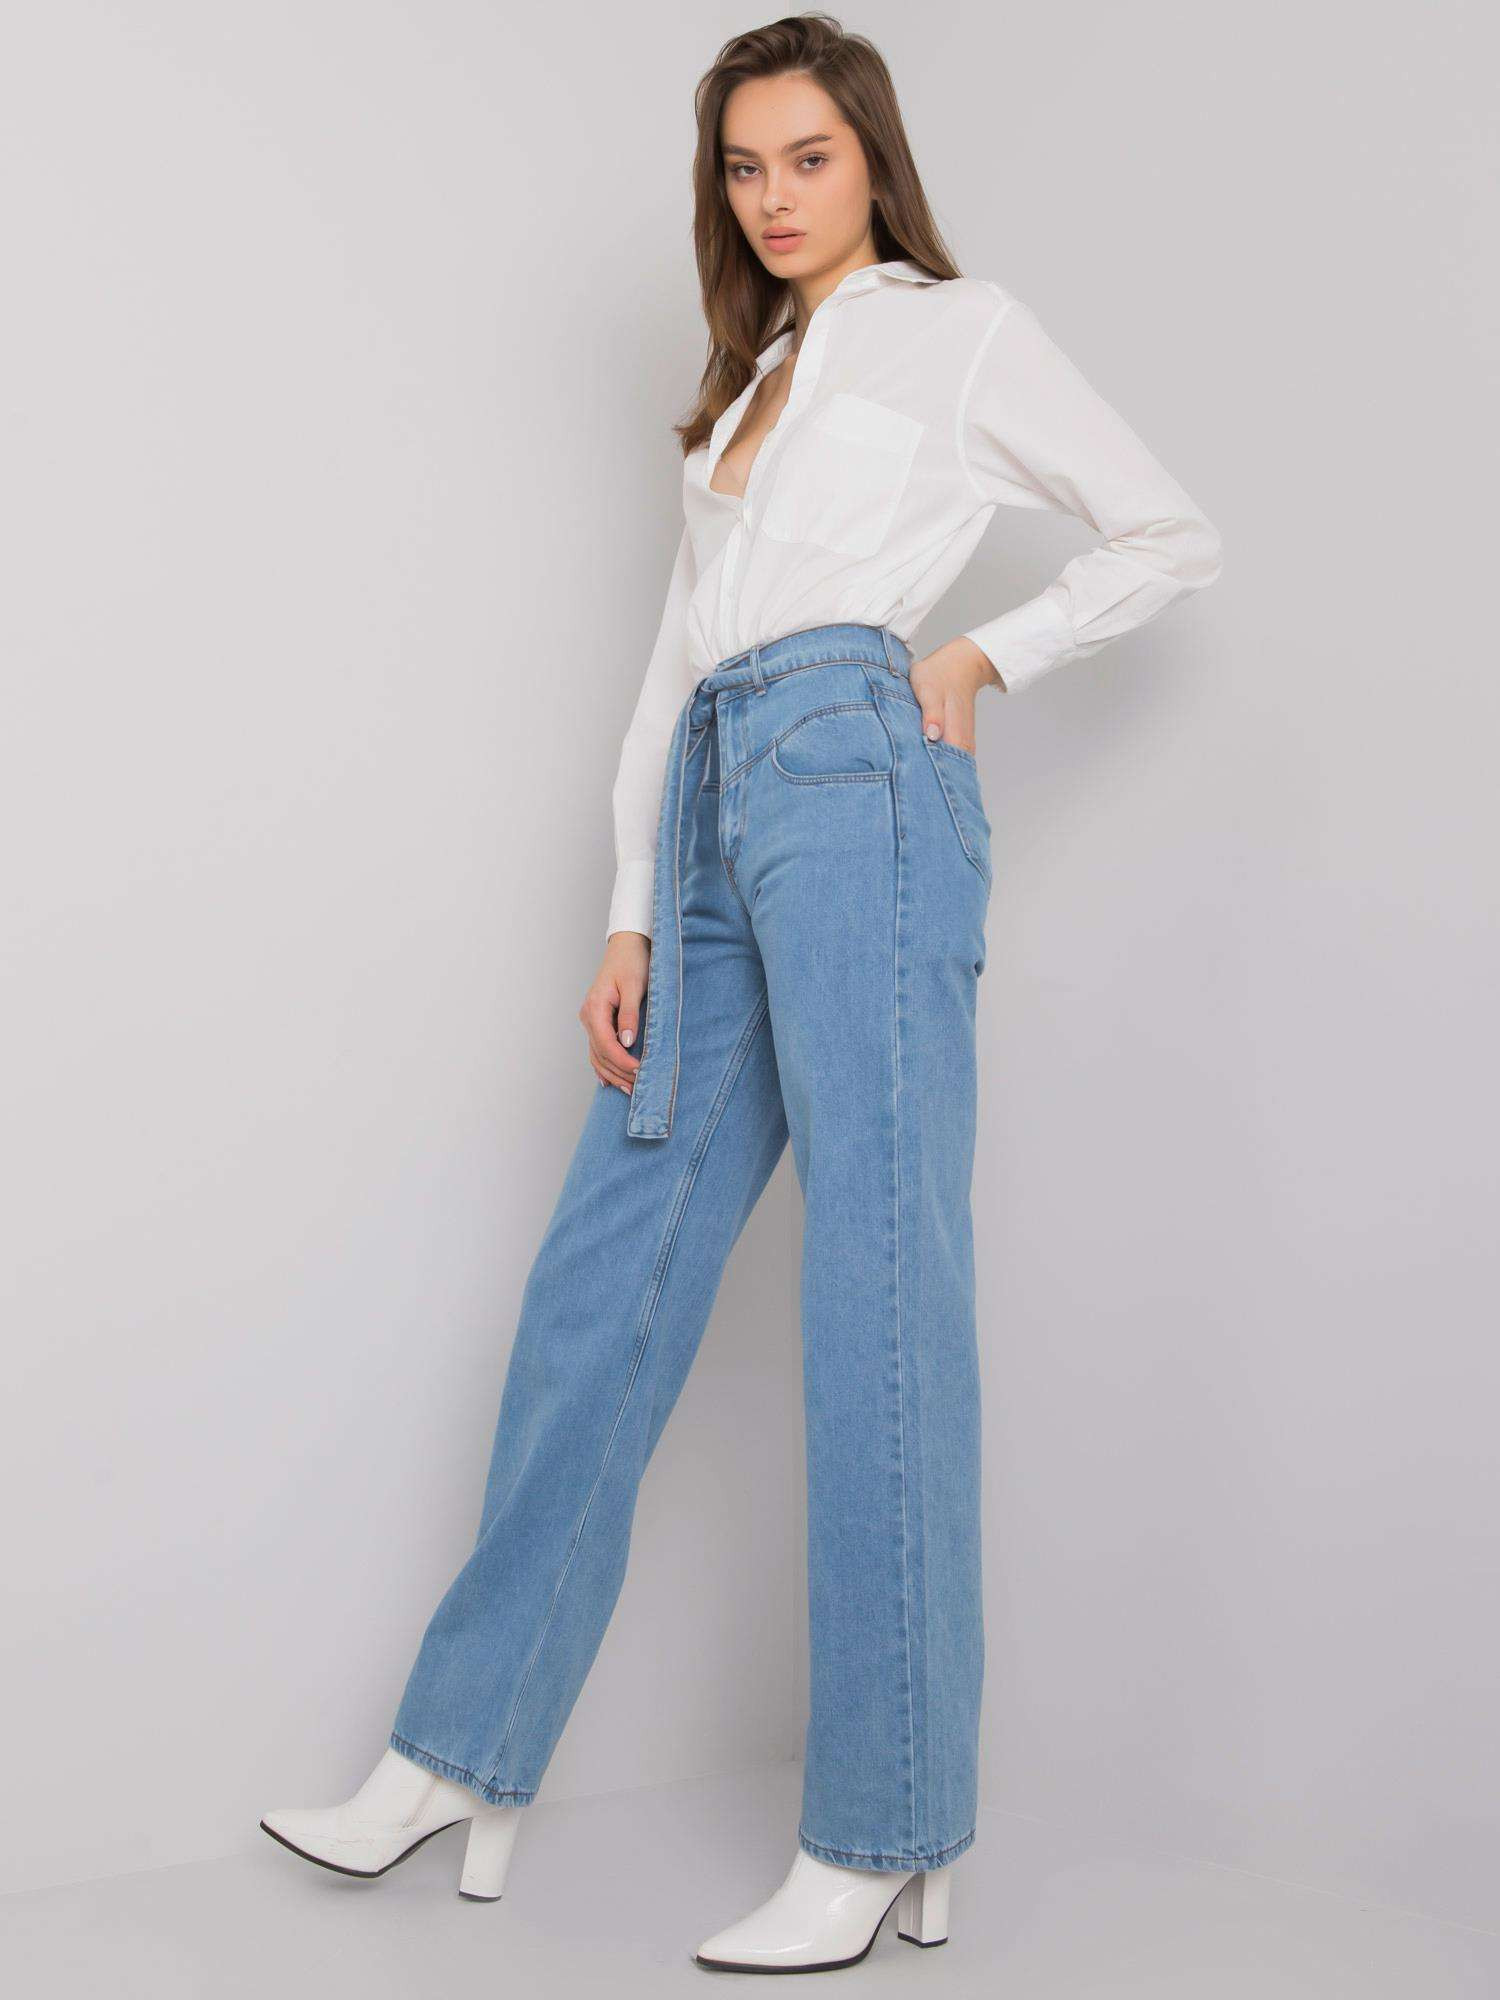 Dámské široké džíny 26 jeanssv.modrá model 17031844 - FPrice